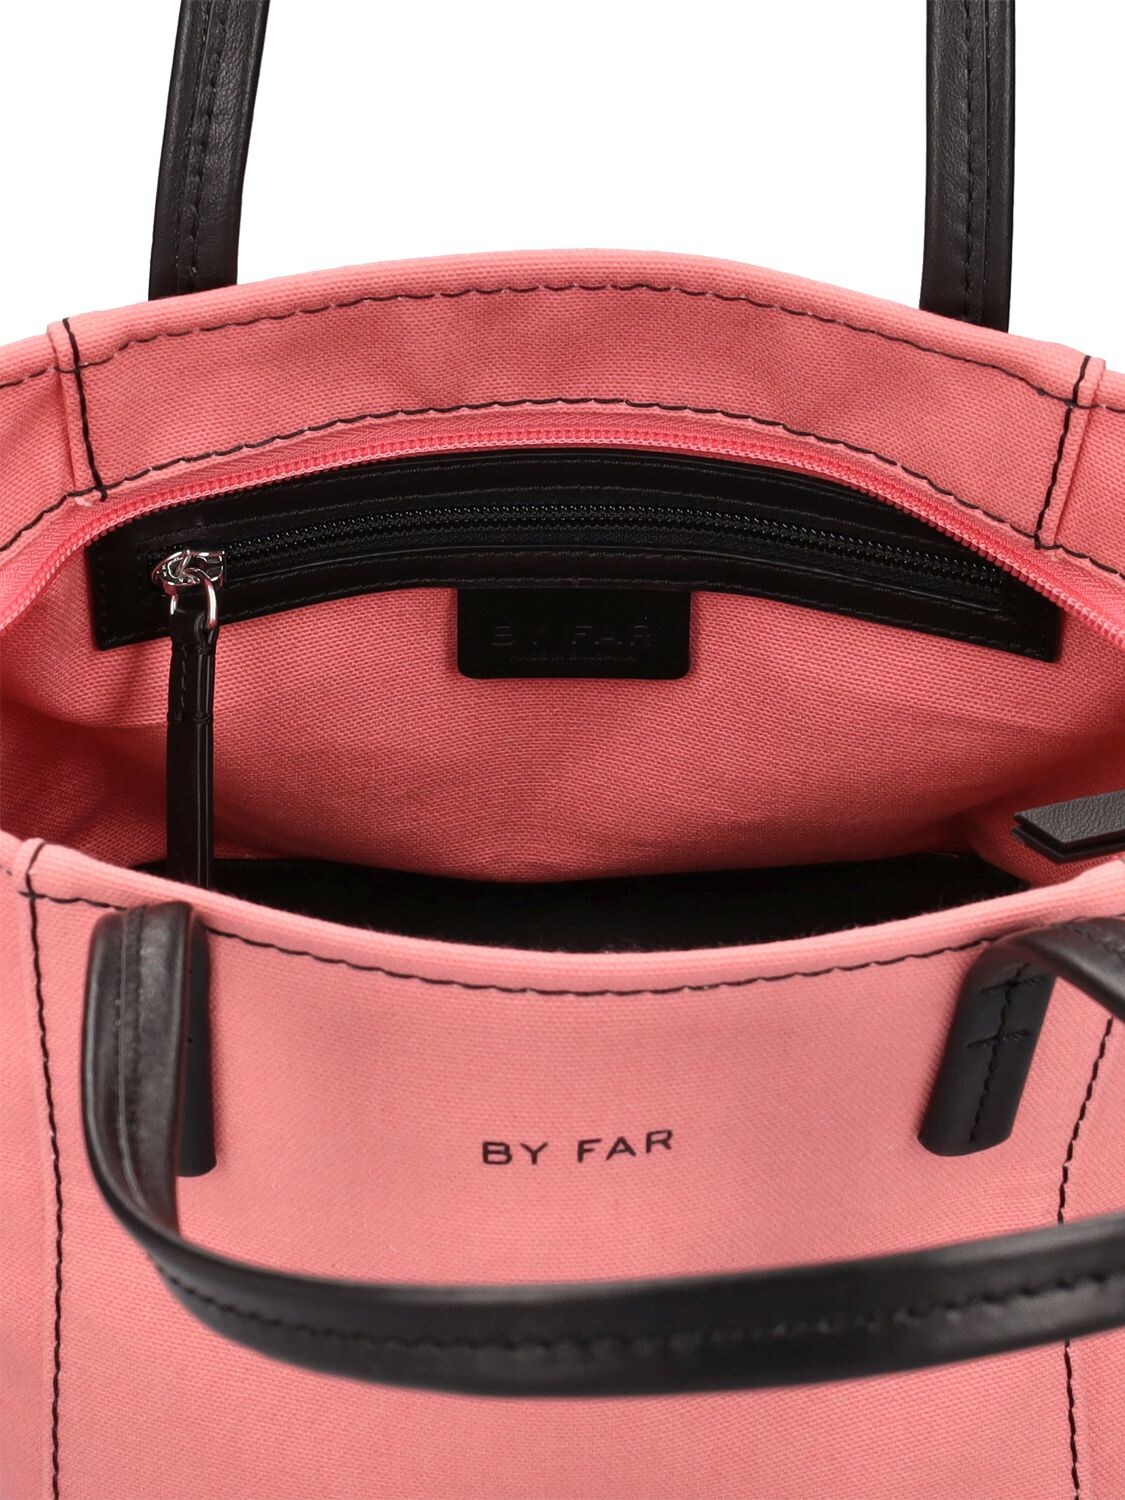 by Far Club PVC Tote Bag - Pink